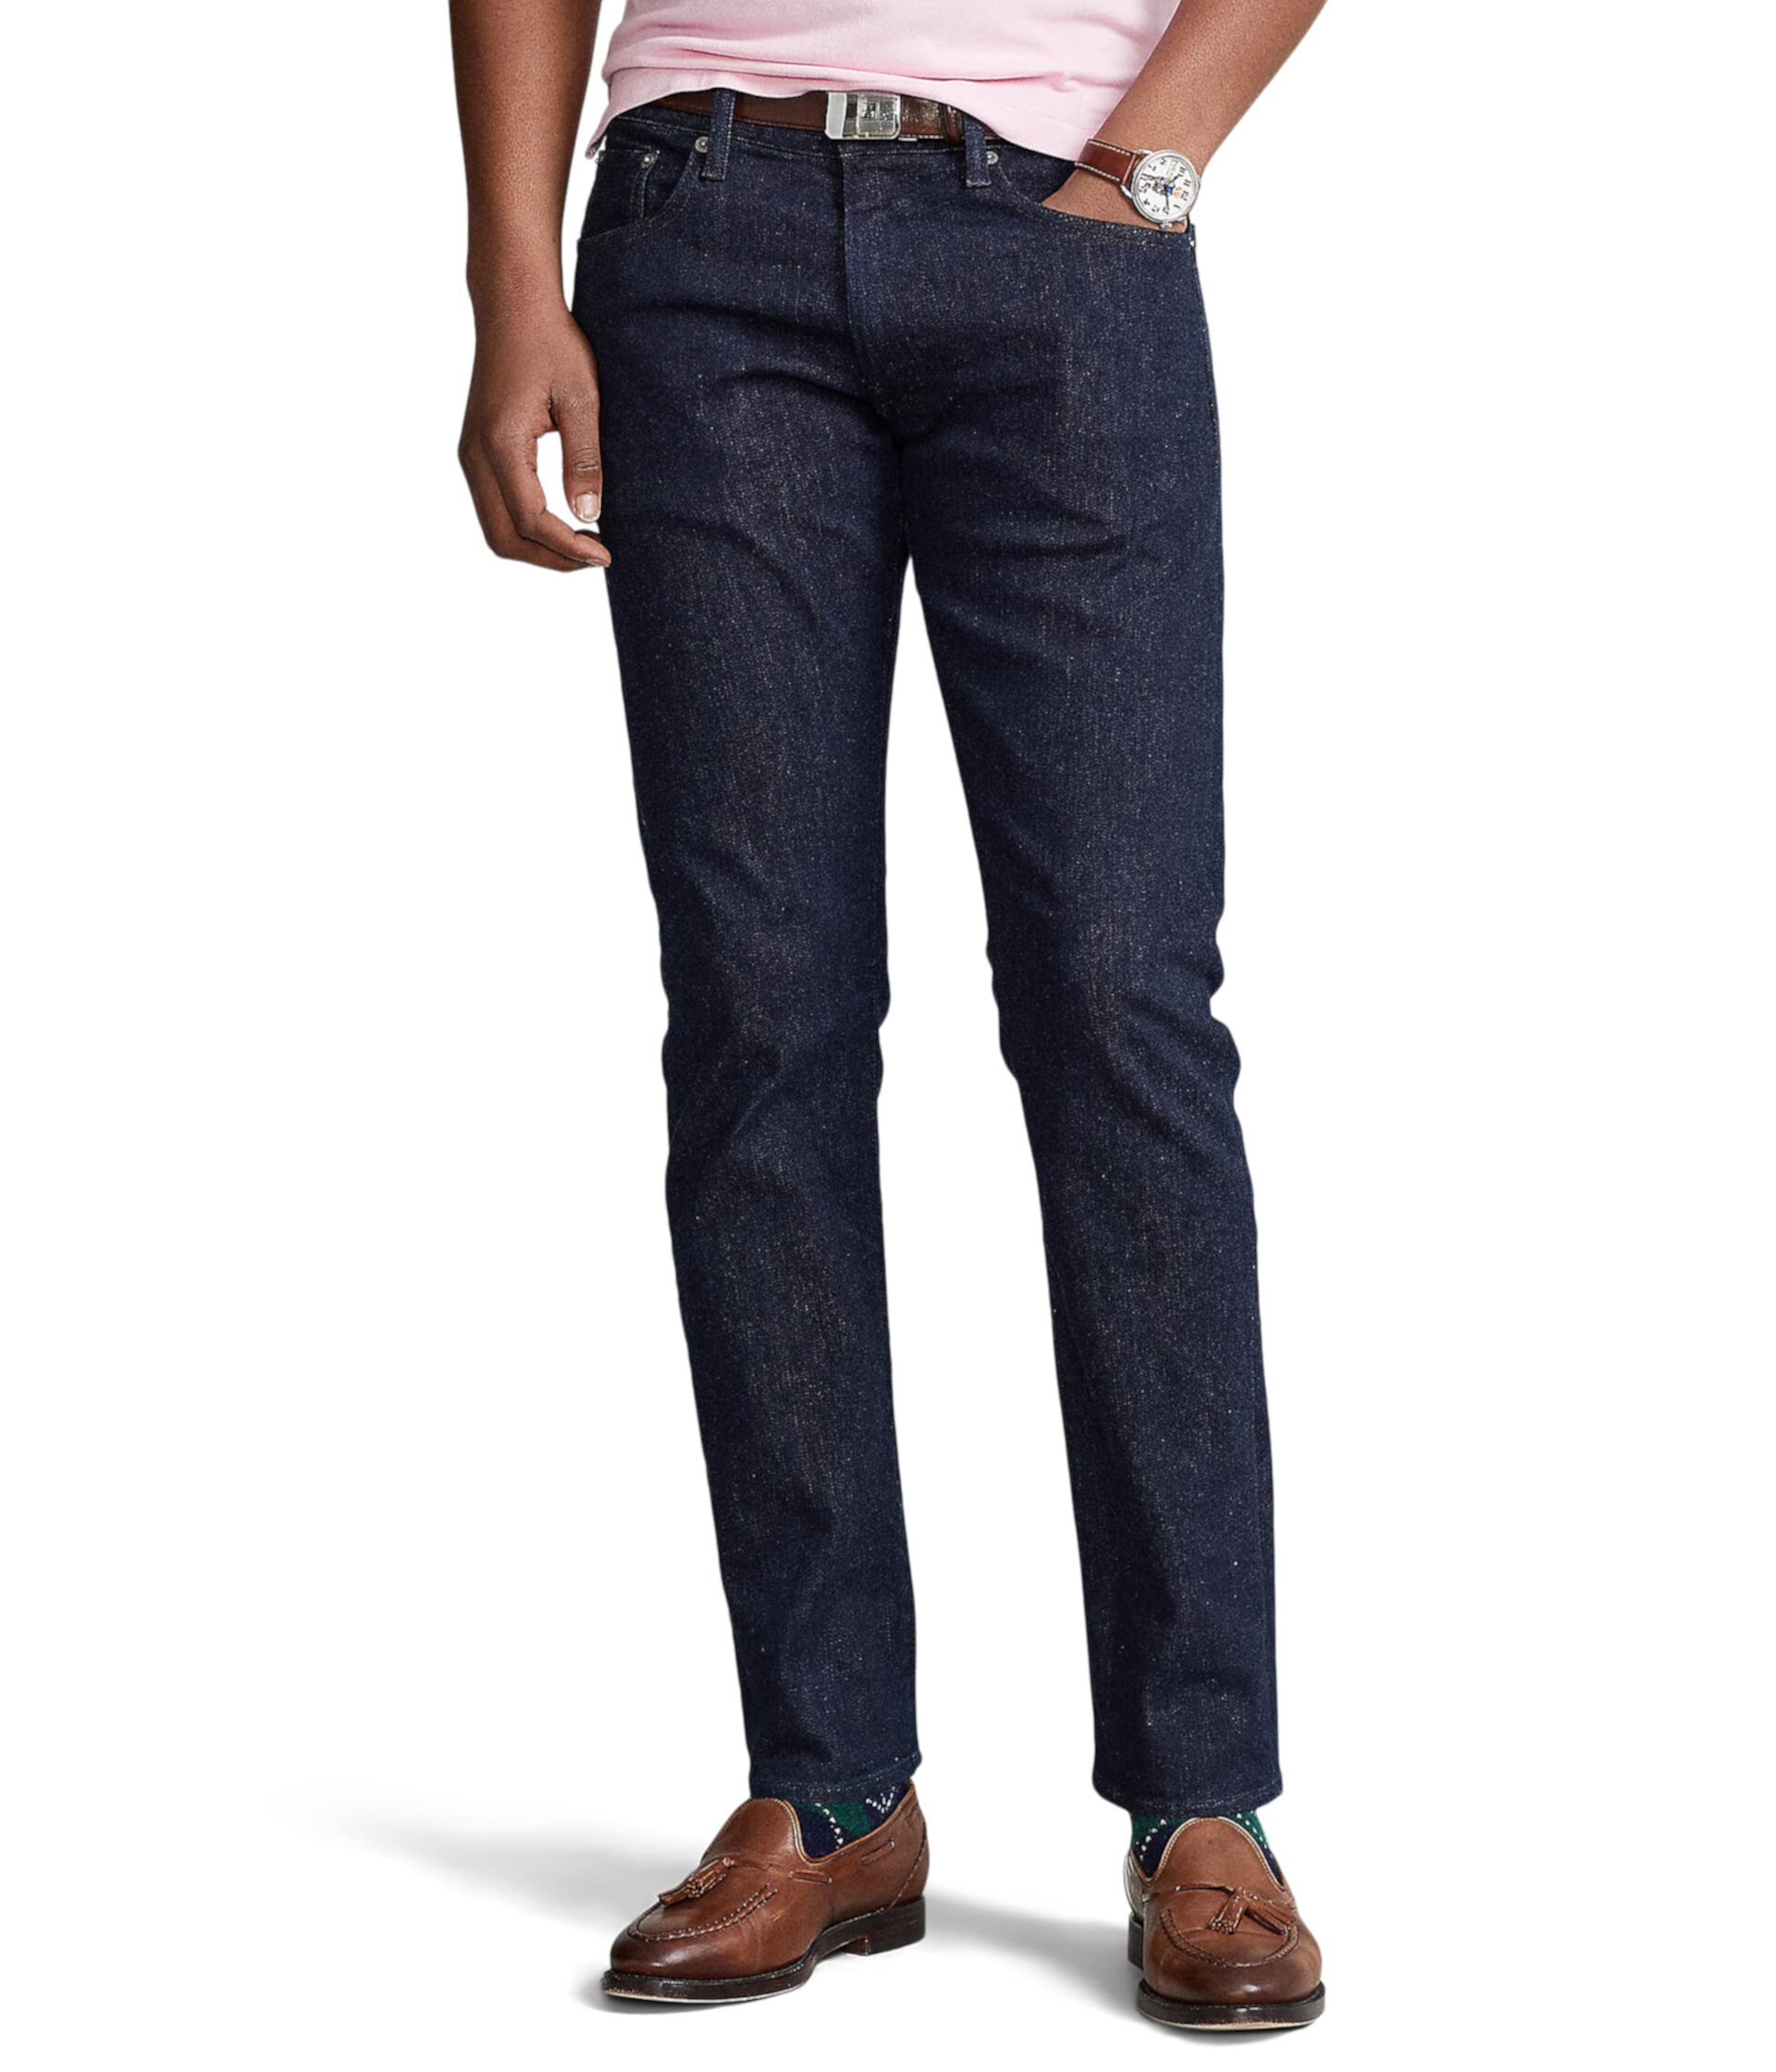 Узкие прямые джинсы Varick Polo Ralph Lauren